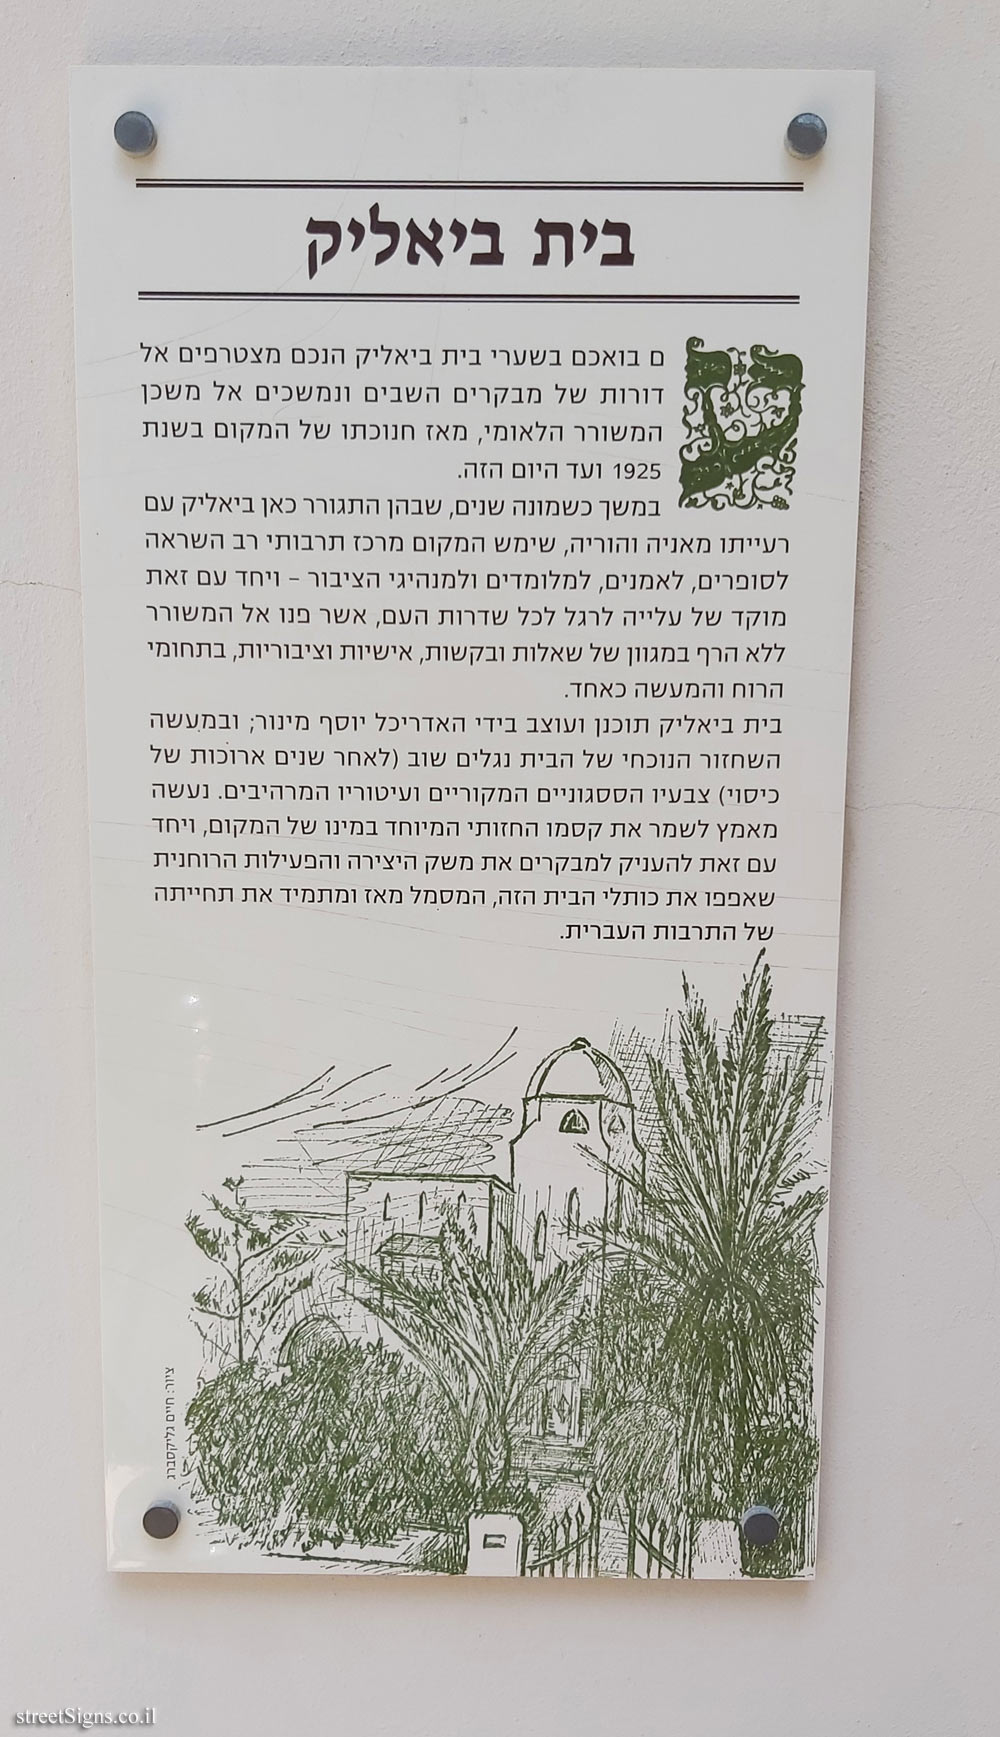 Bialik House - Bialik St 22, Tel Aviv-Yafo, Israel